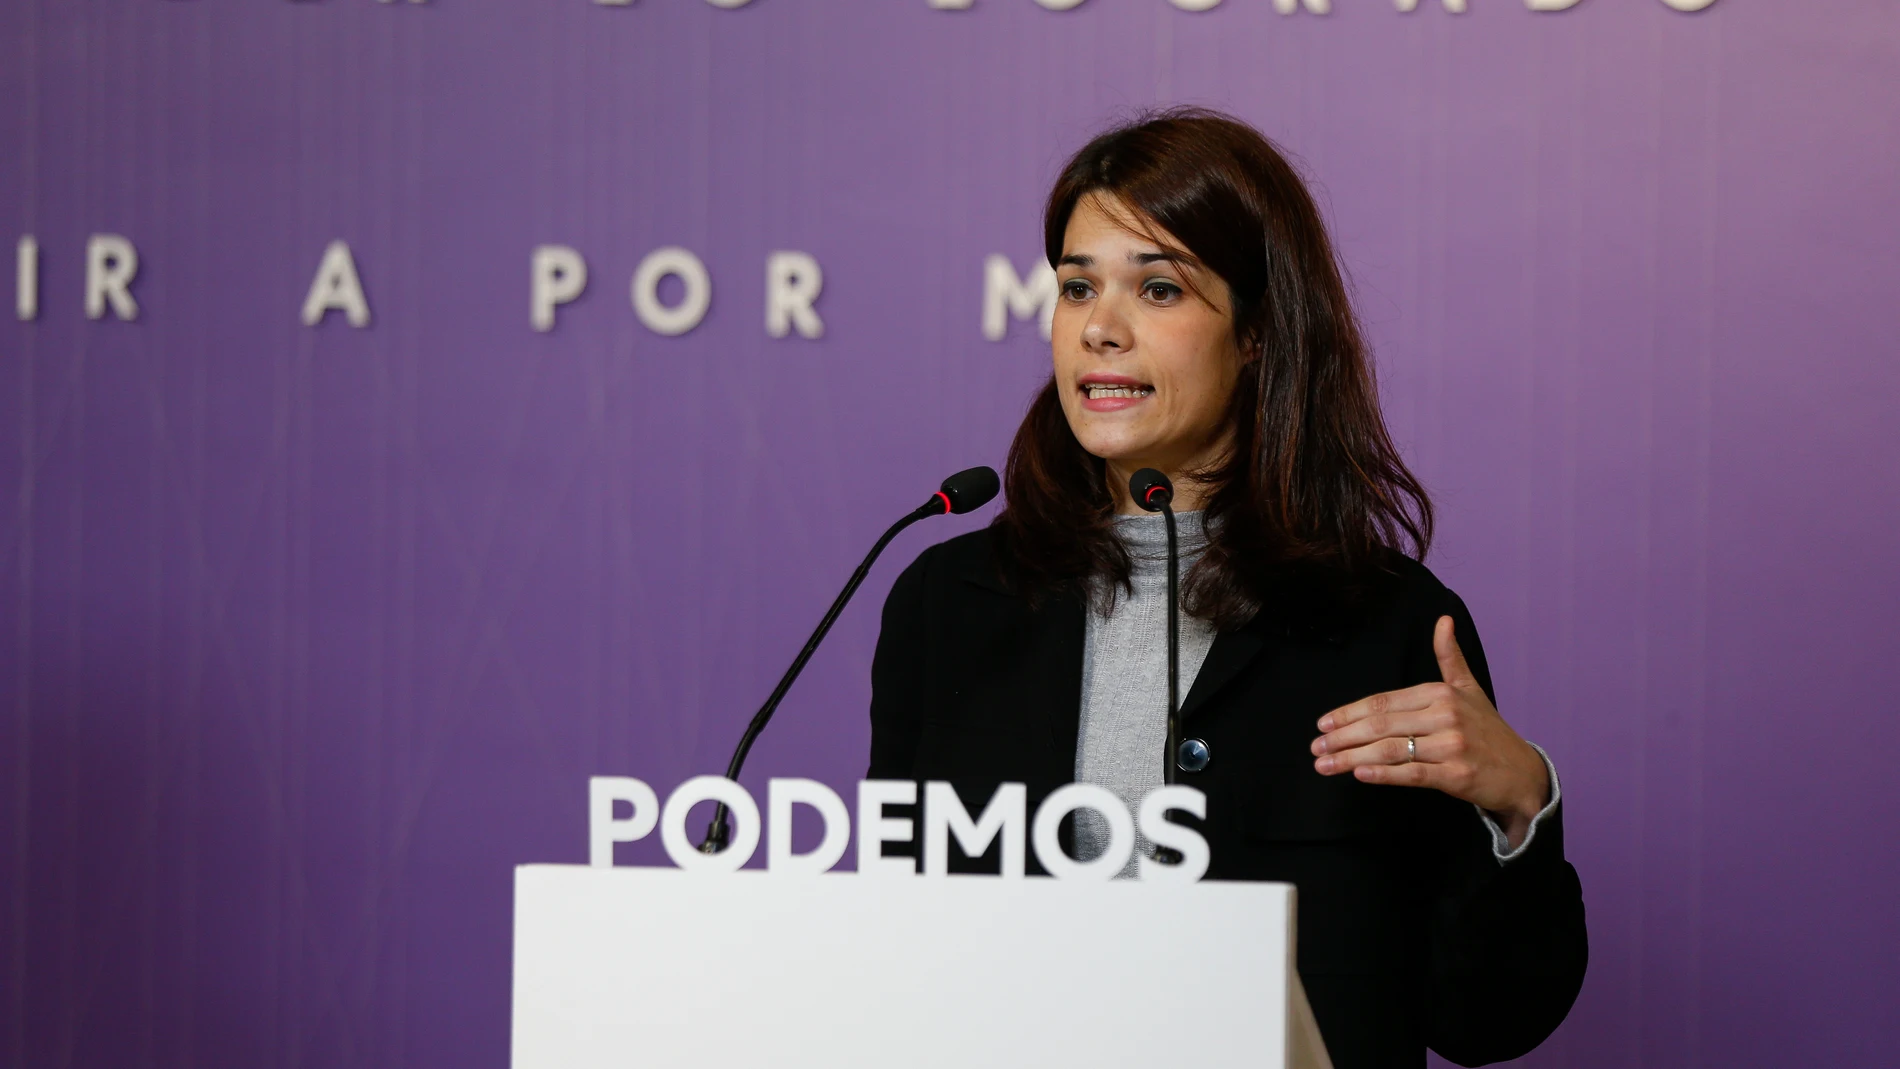 La portavoz de Unidas Podemos Isa Serra